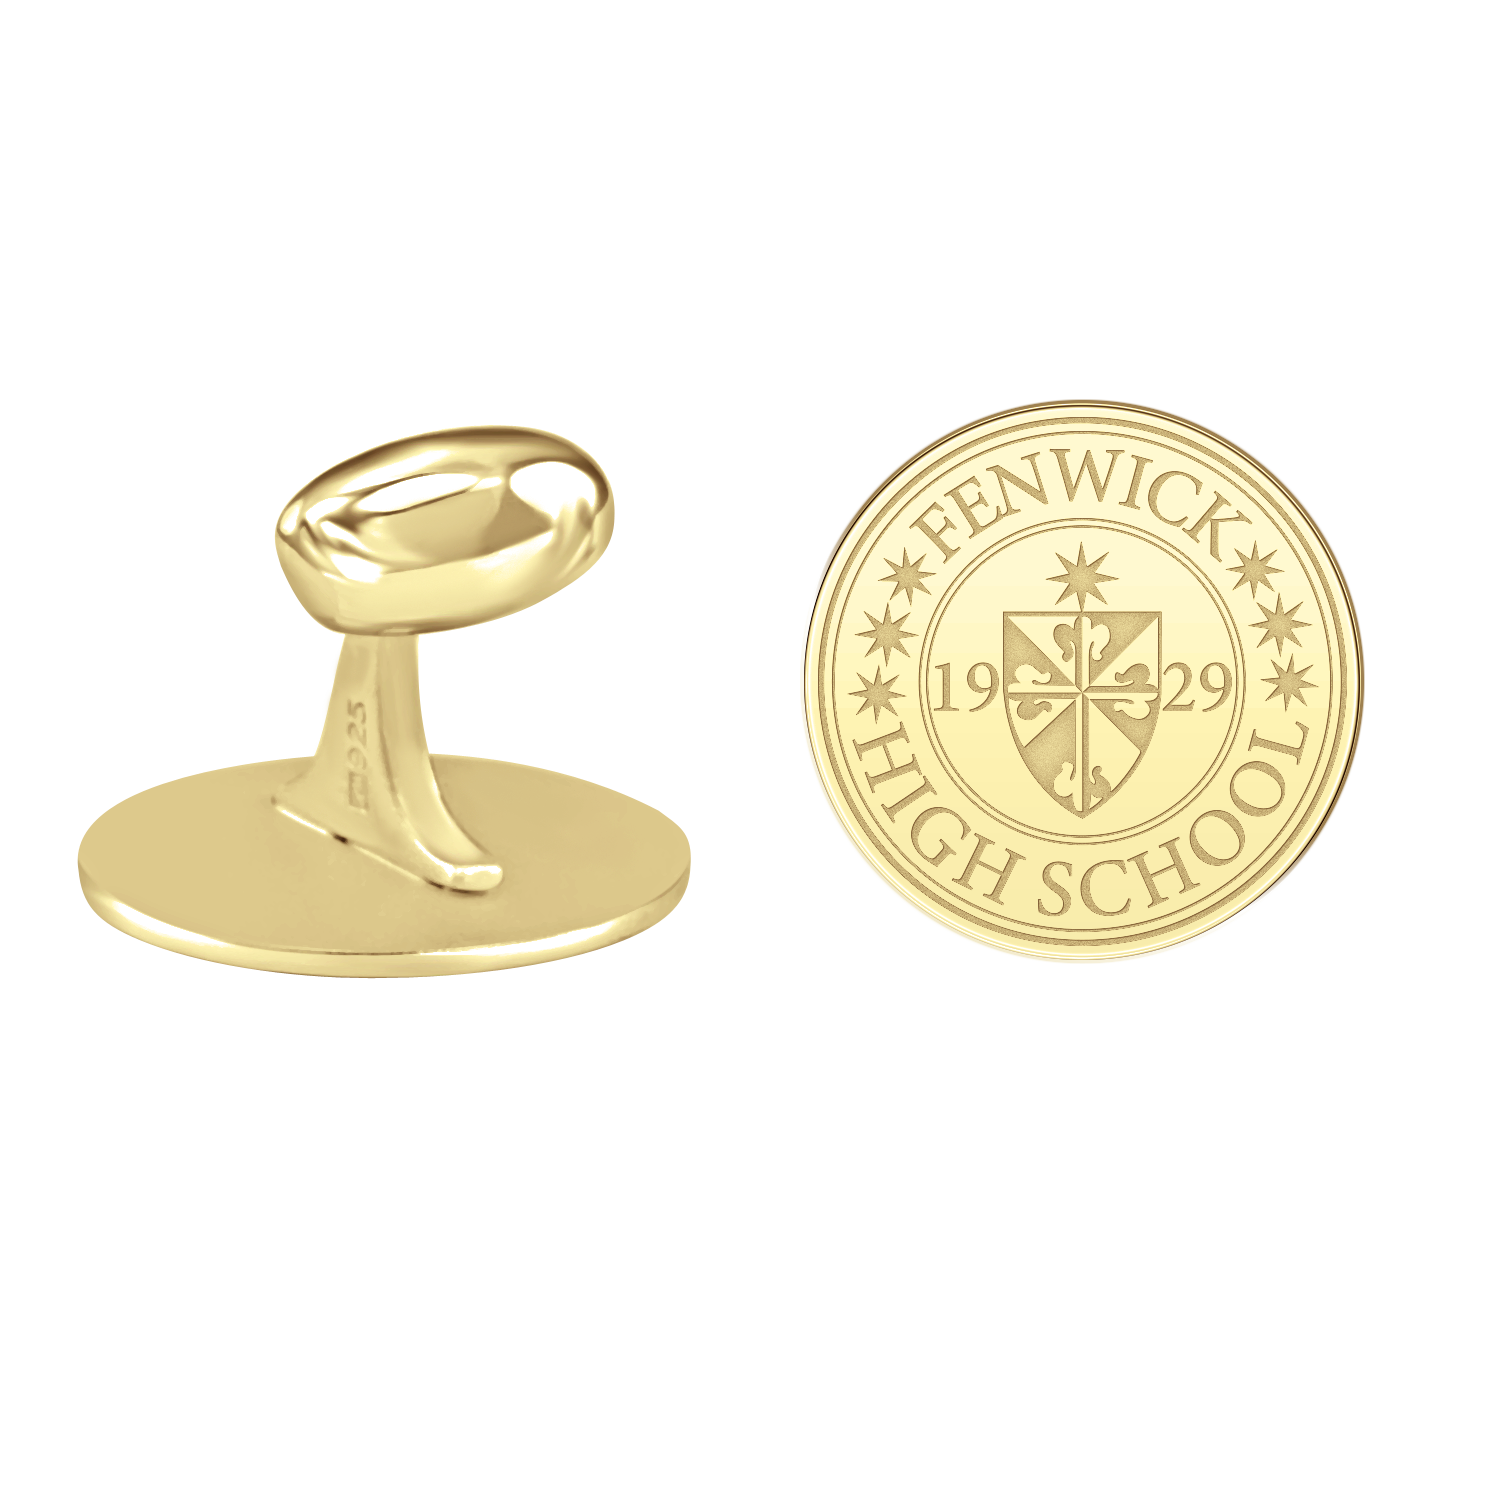 Fenwick Seal Cufflinks